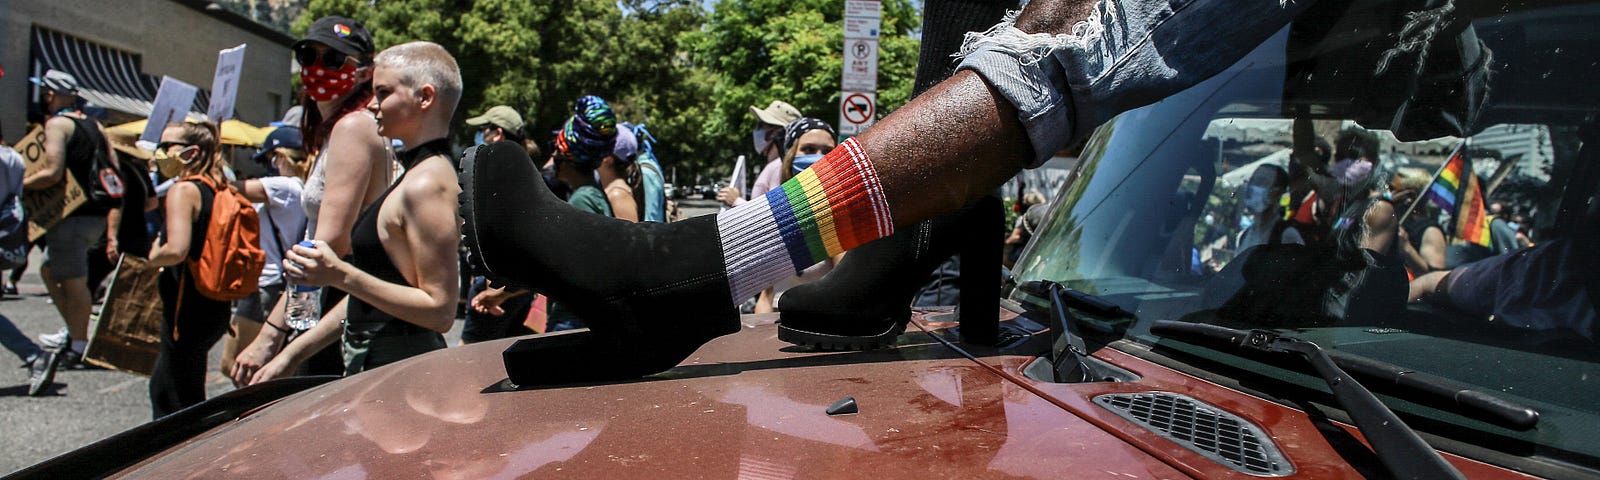 A BLM march in LA in lieu of Pride, June 14, 2020